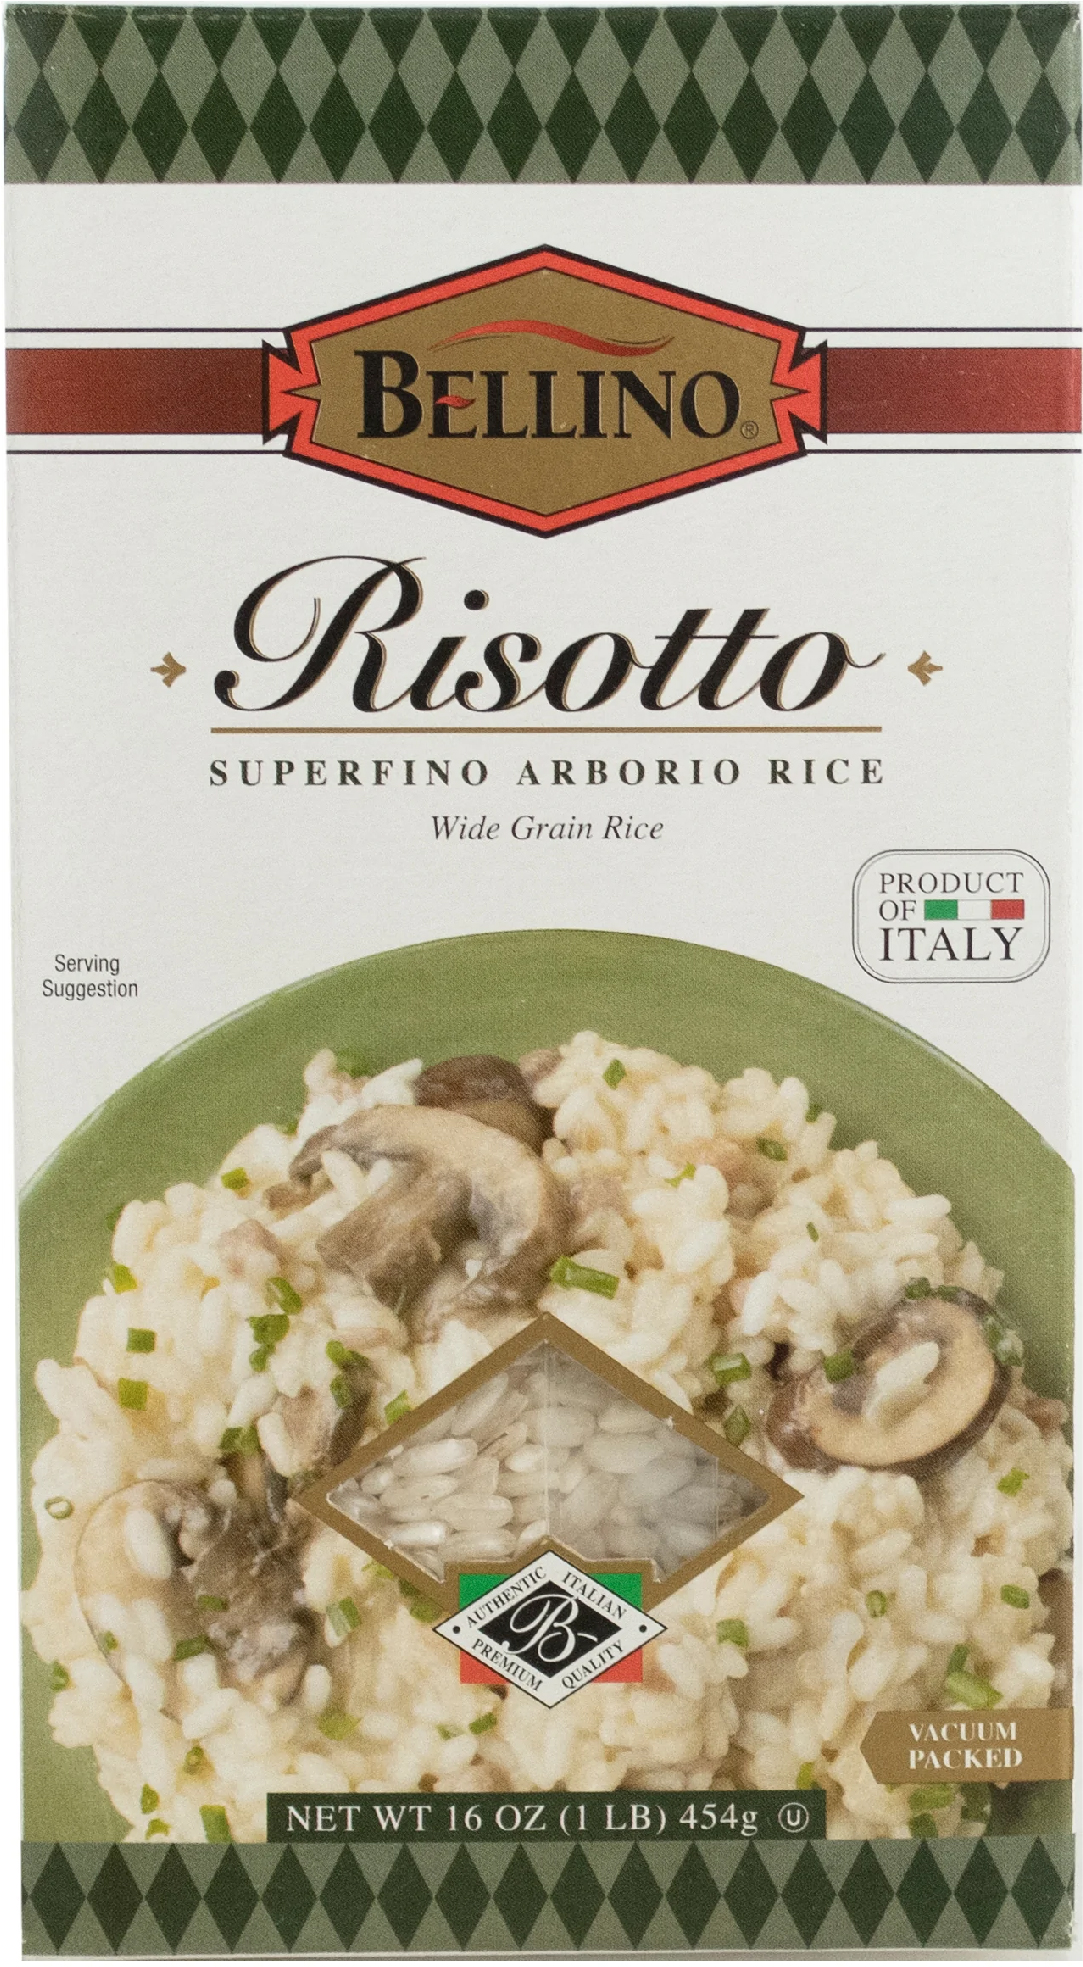 Bellino Risotto Arborio Rice - Product